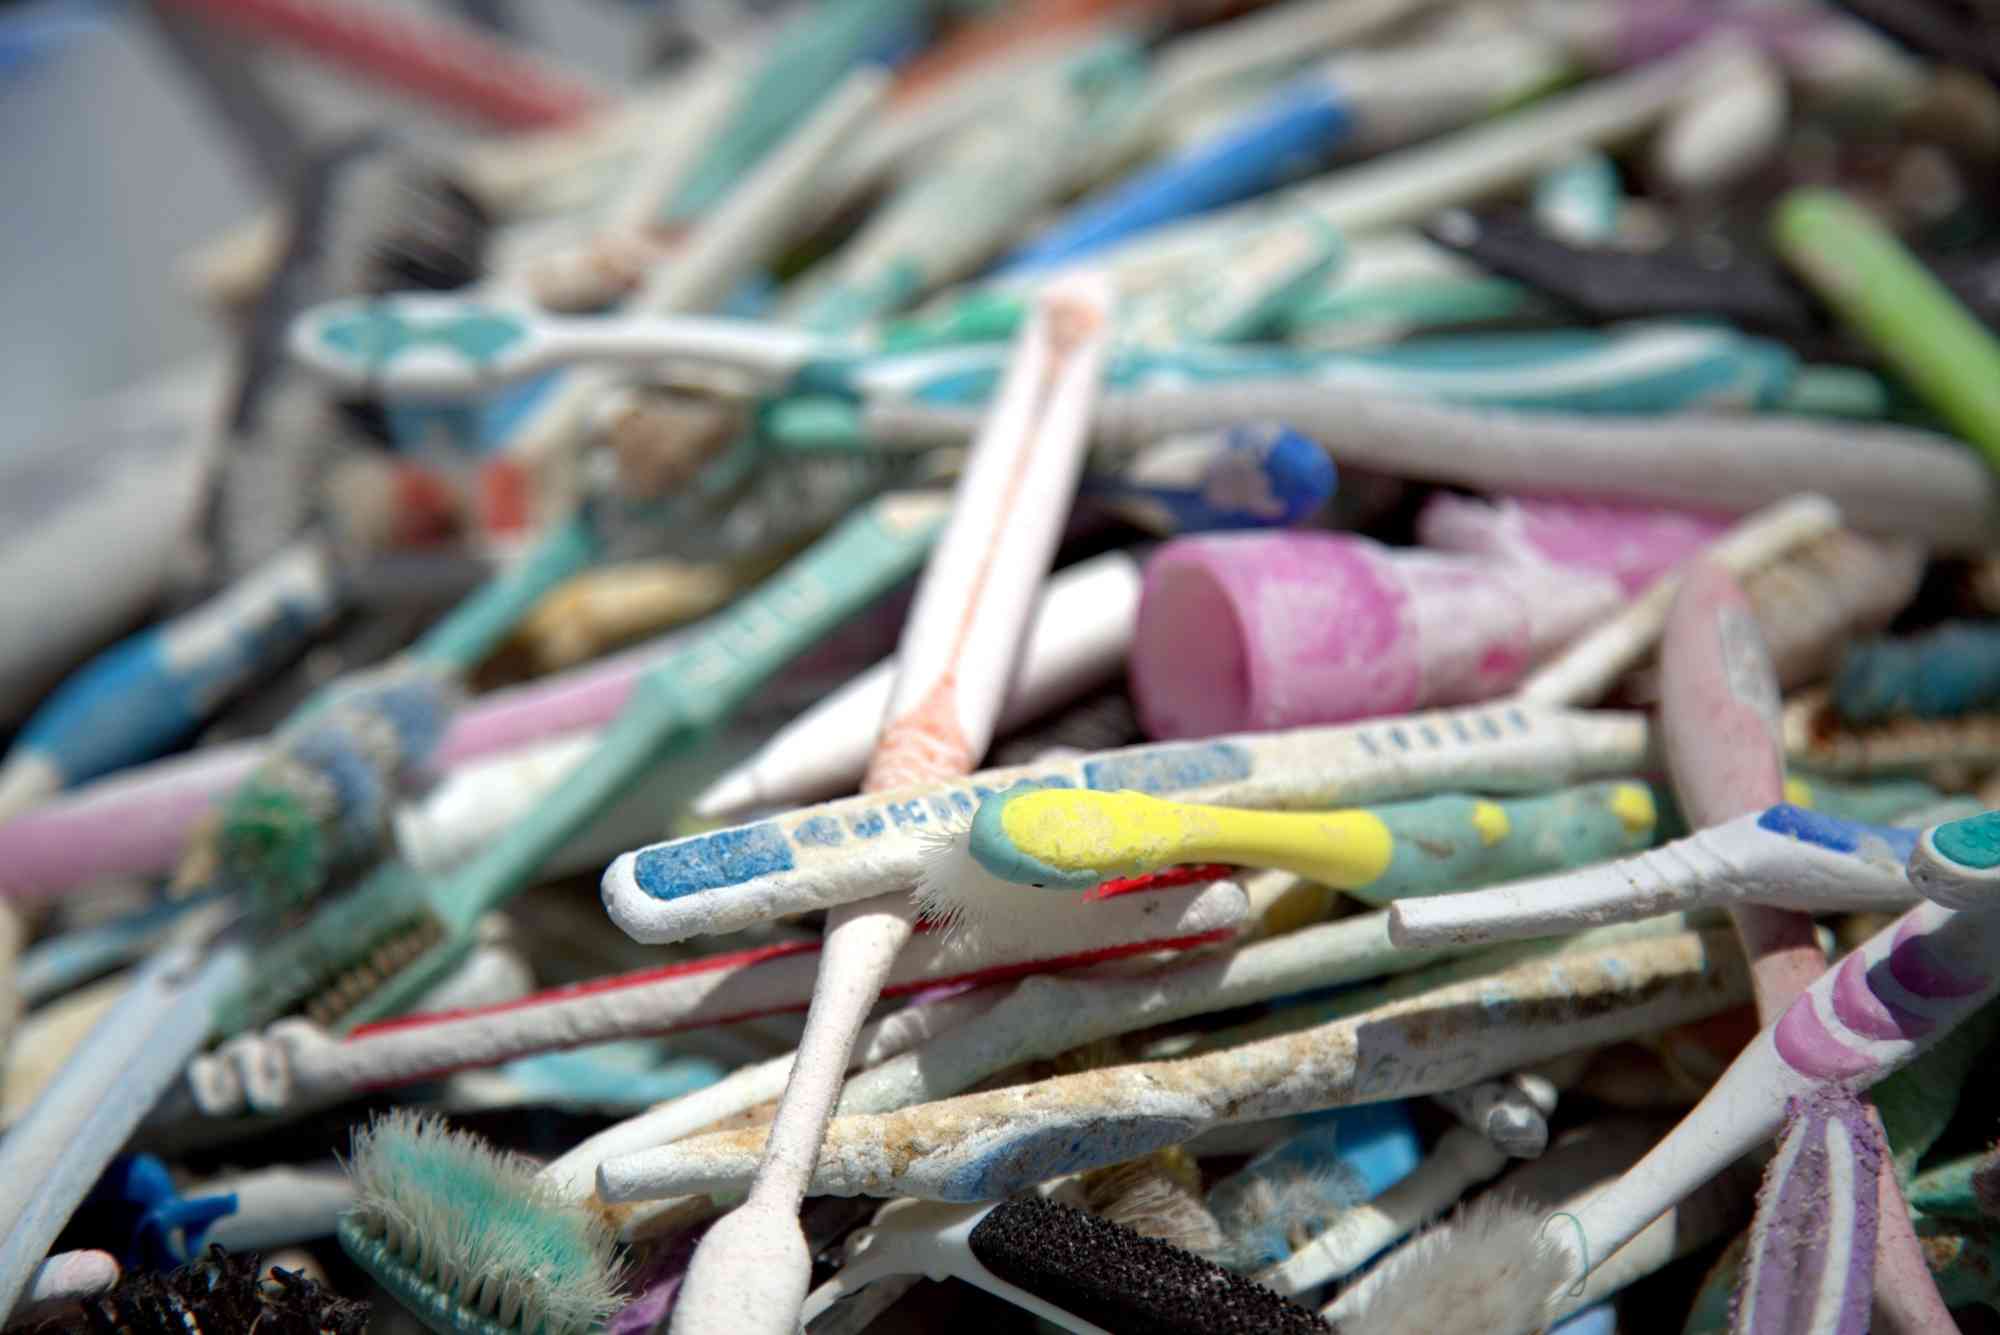 Marine debris cleanup toothbrushes